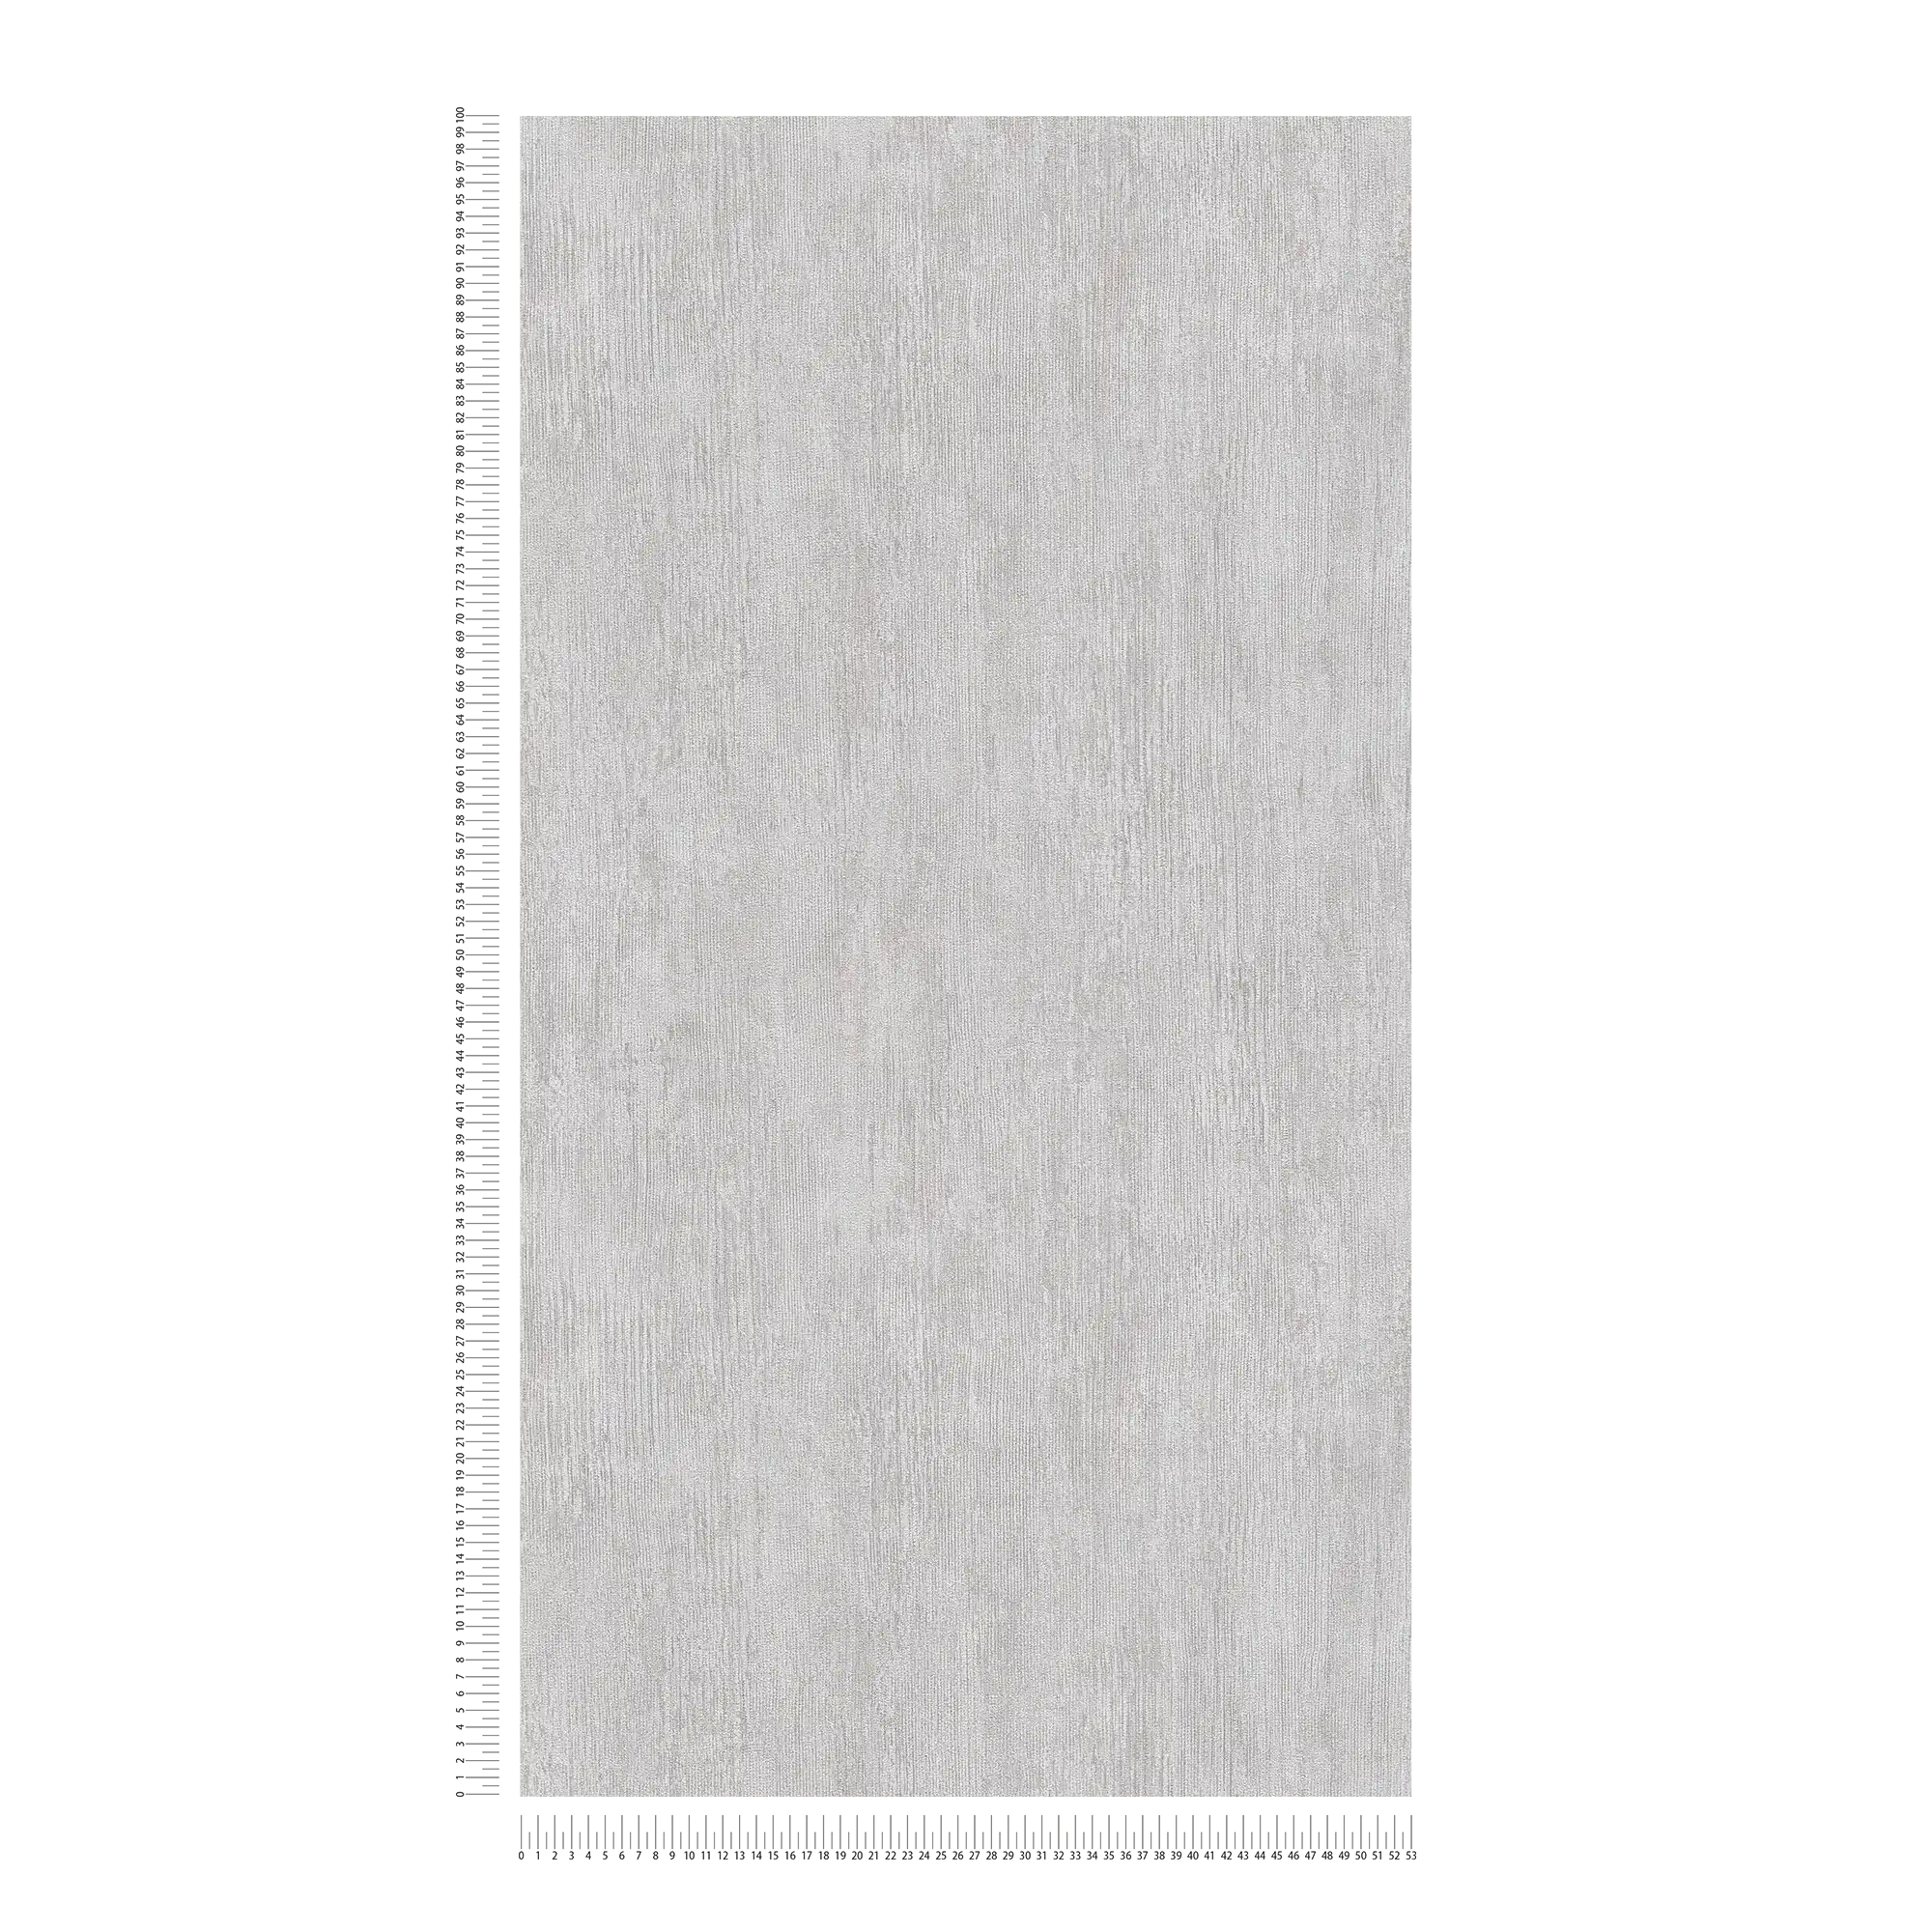             Papier peint uni Design à rainures, style industriel - gris, blanc
        